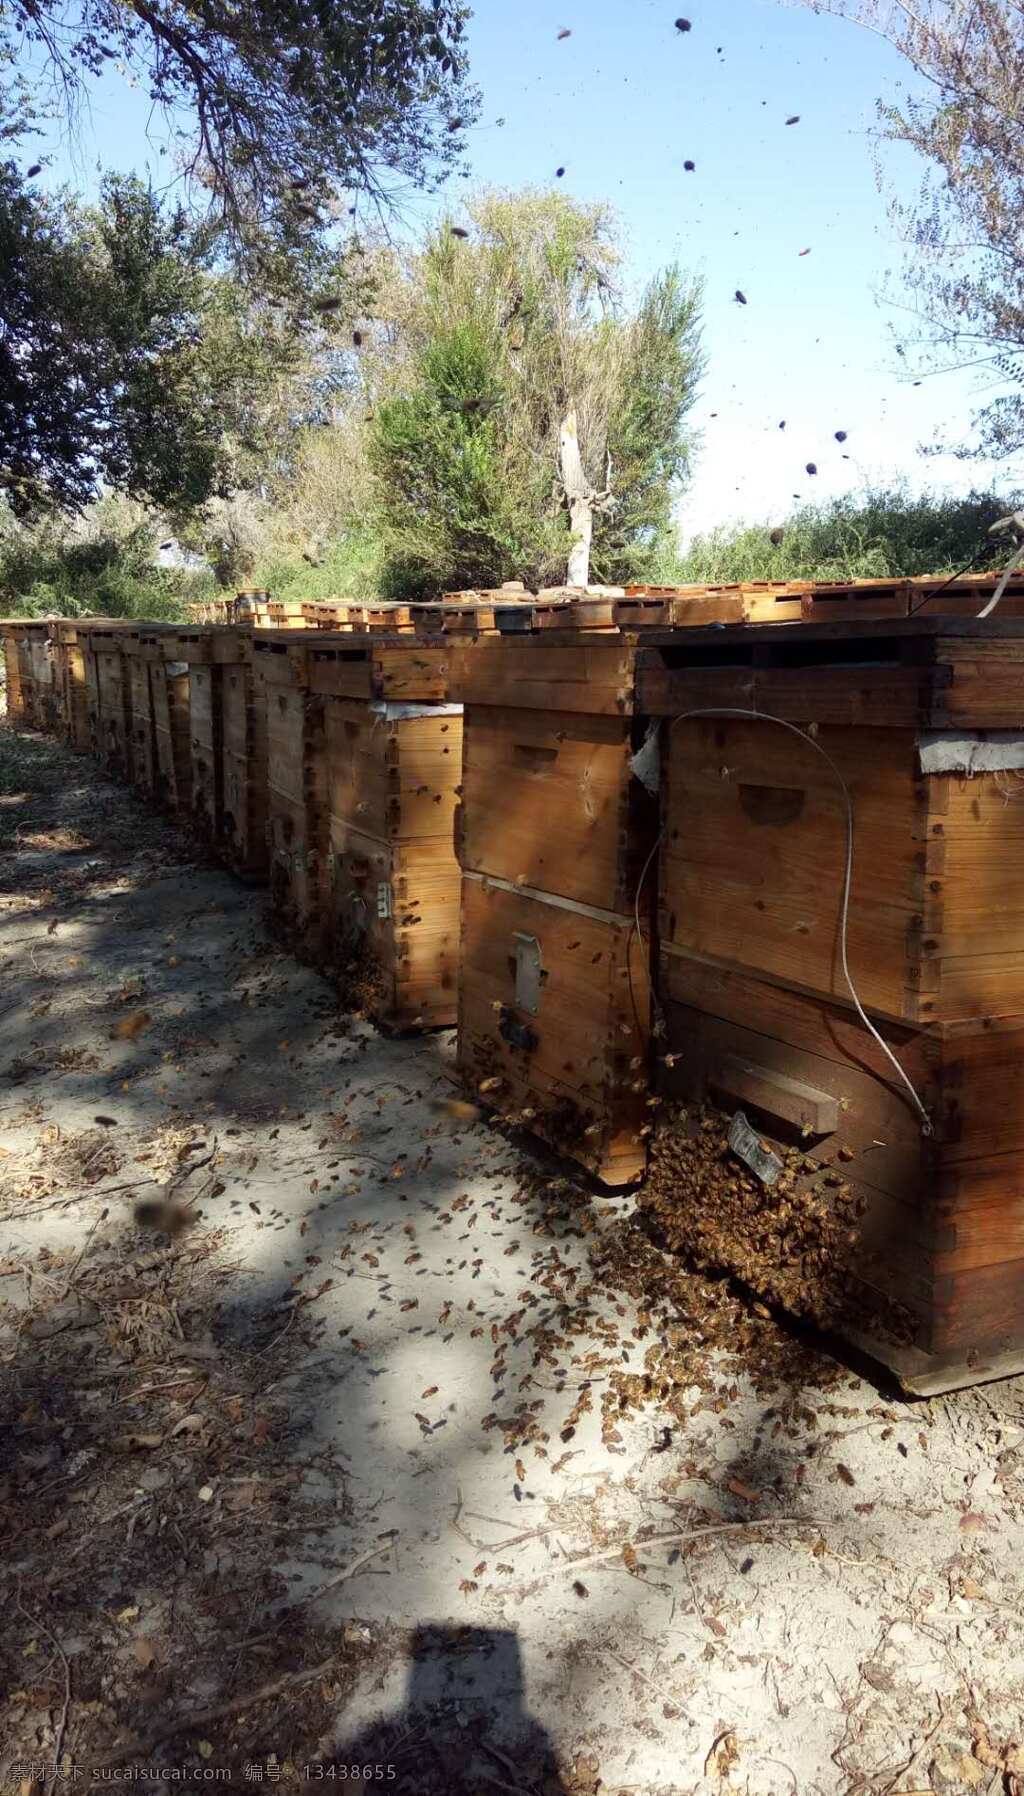 蜂箱 养蜂场 蜜蜂箱 蜂蜜箱 生物世界 昆虫